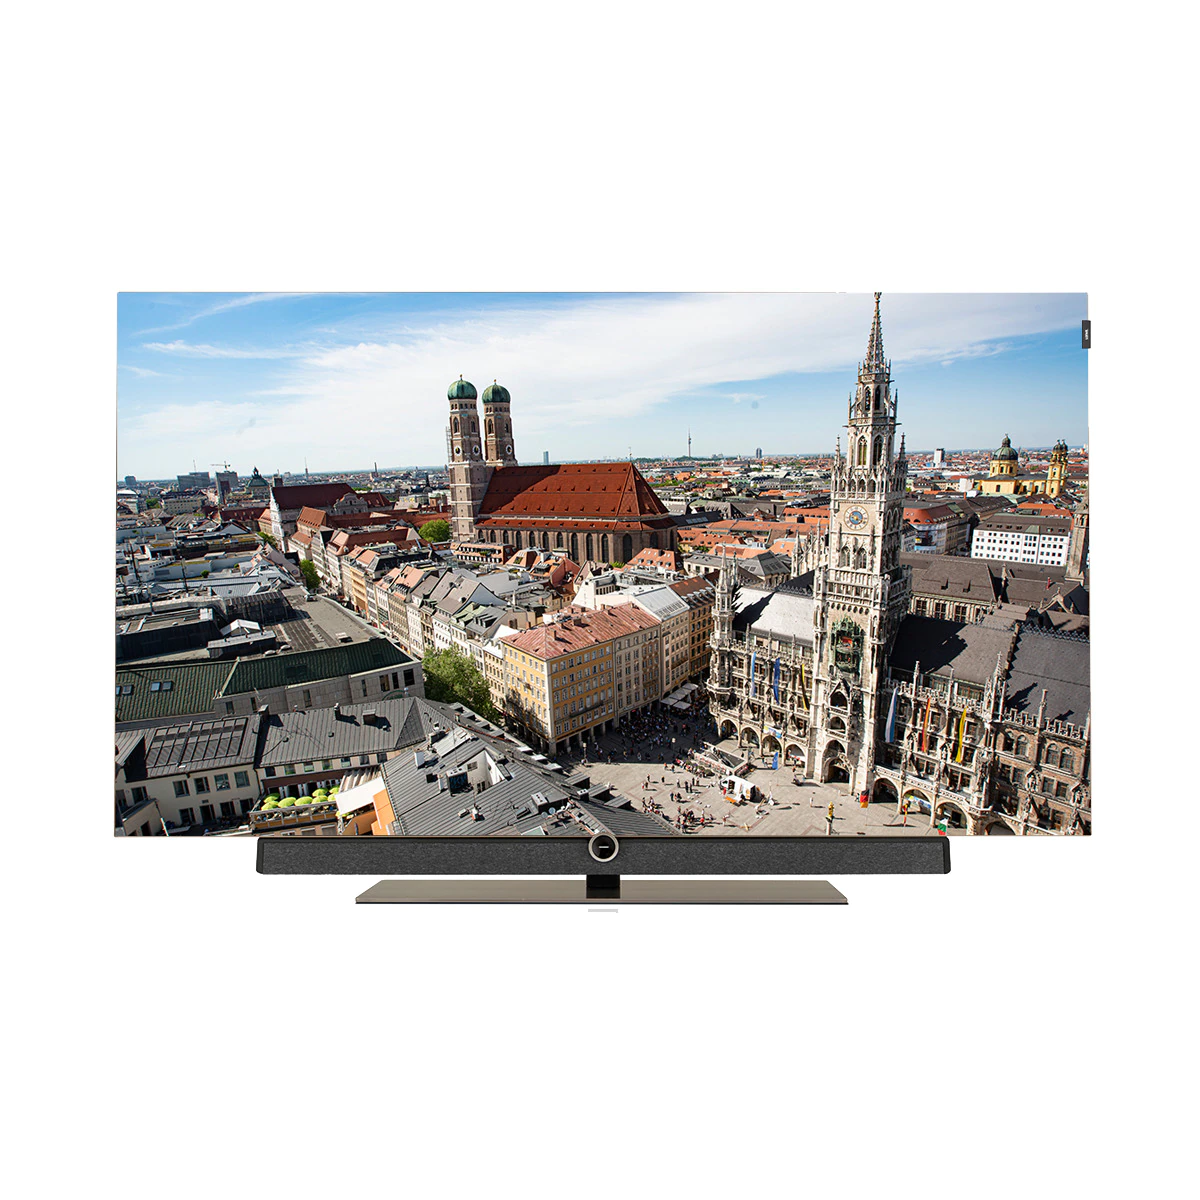 TV OLED 165,1 cm (65») Loewe Bild 5.65 UHD 4K, HDR, DR+ 1 TB, Wi-Fi y Smart TV